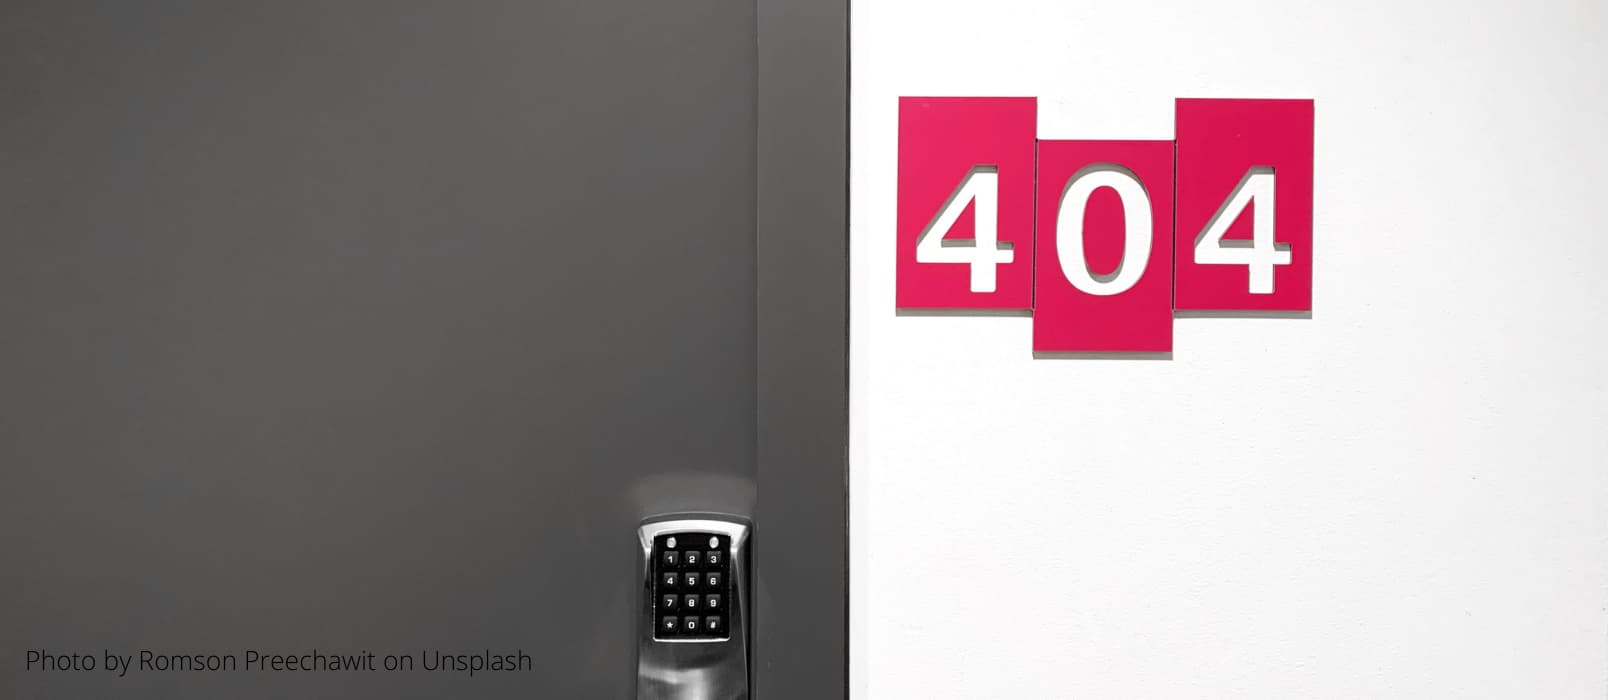 【白话科普】上网时遇到的 404 是什么意思？